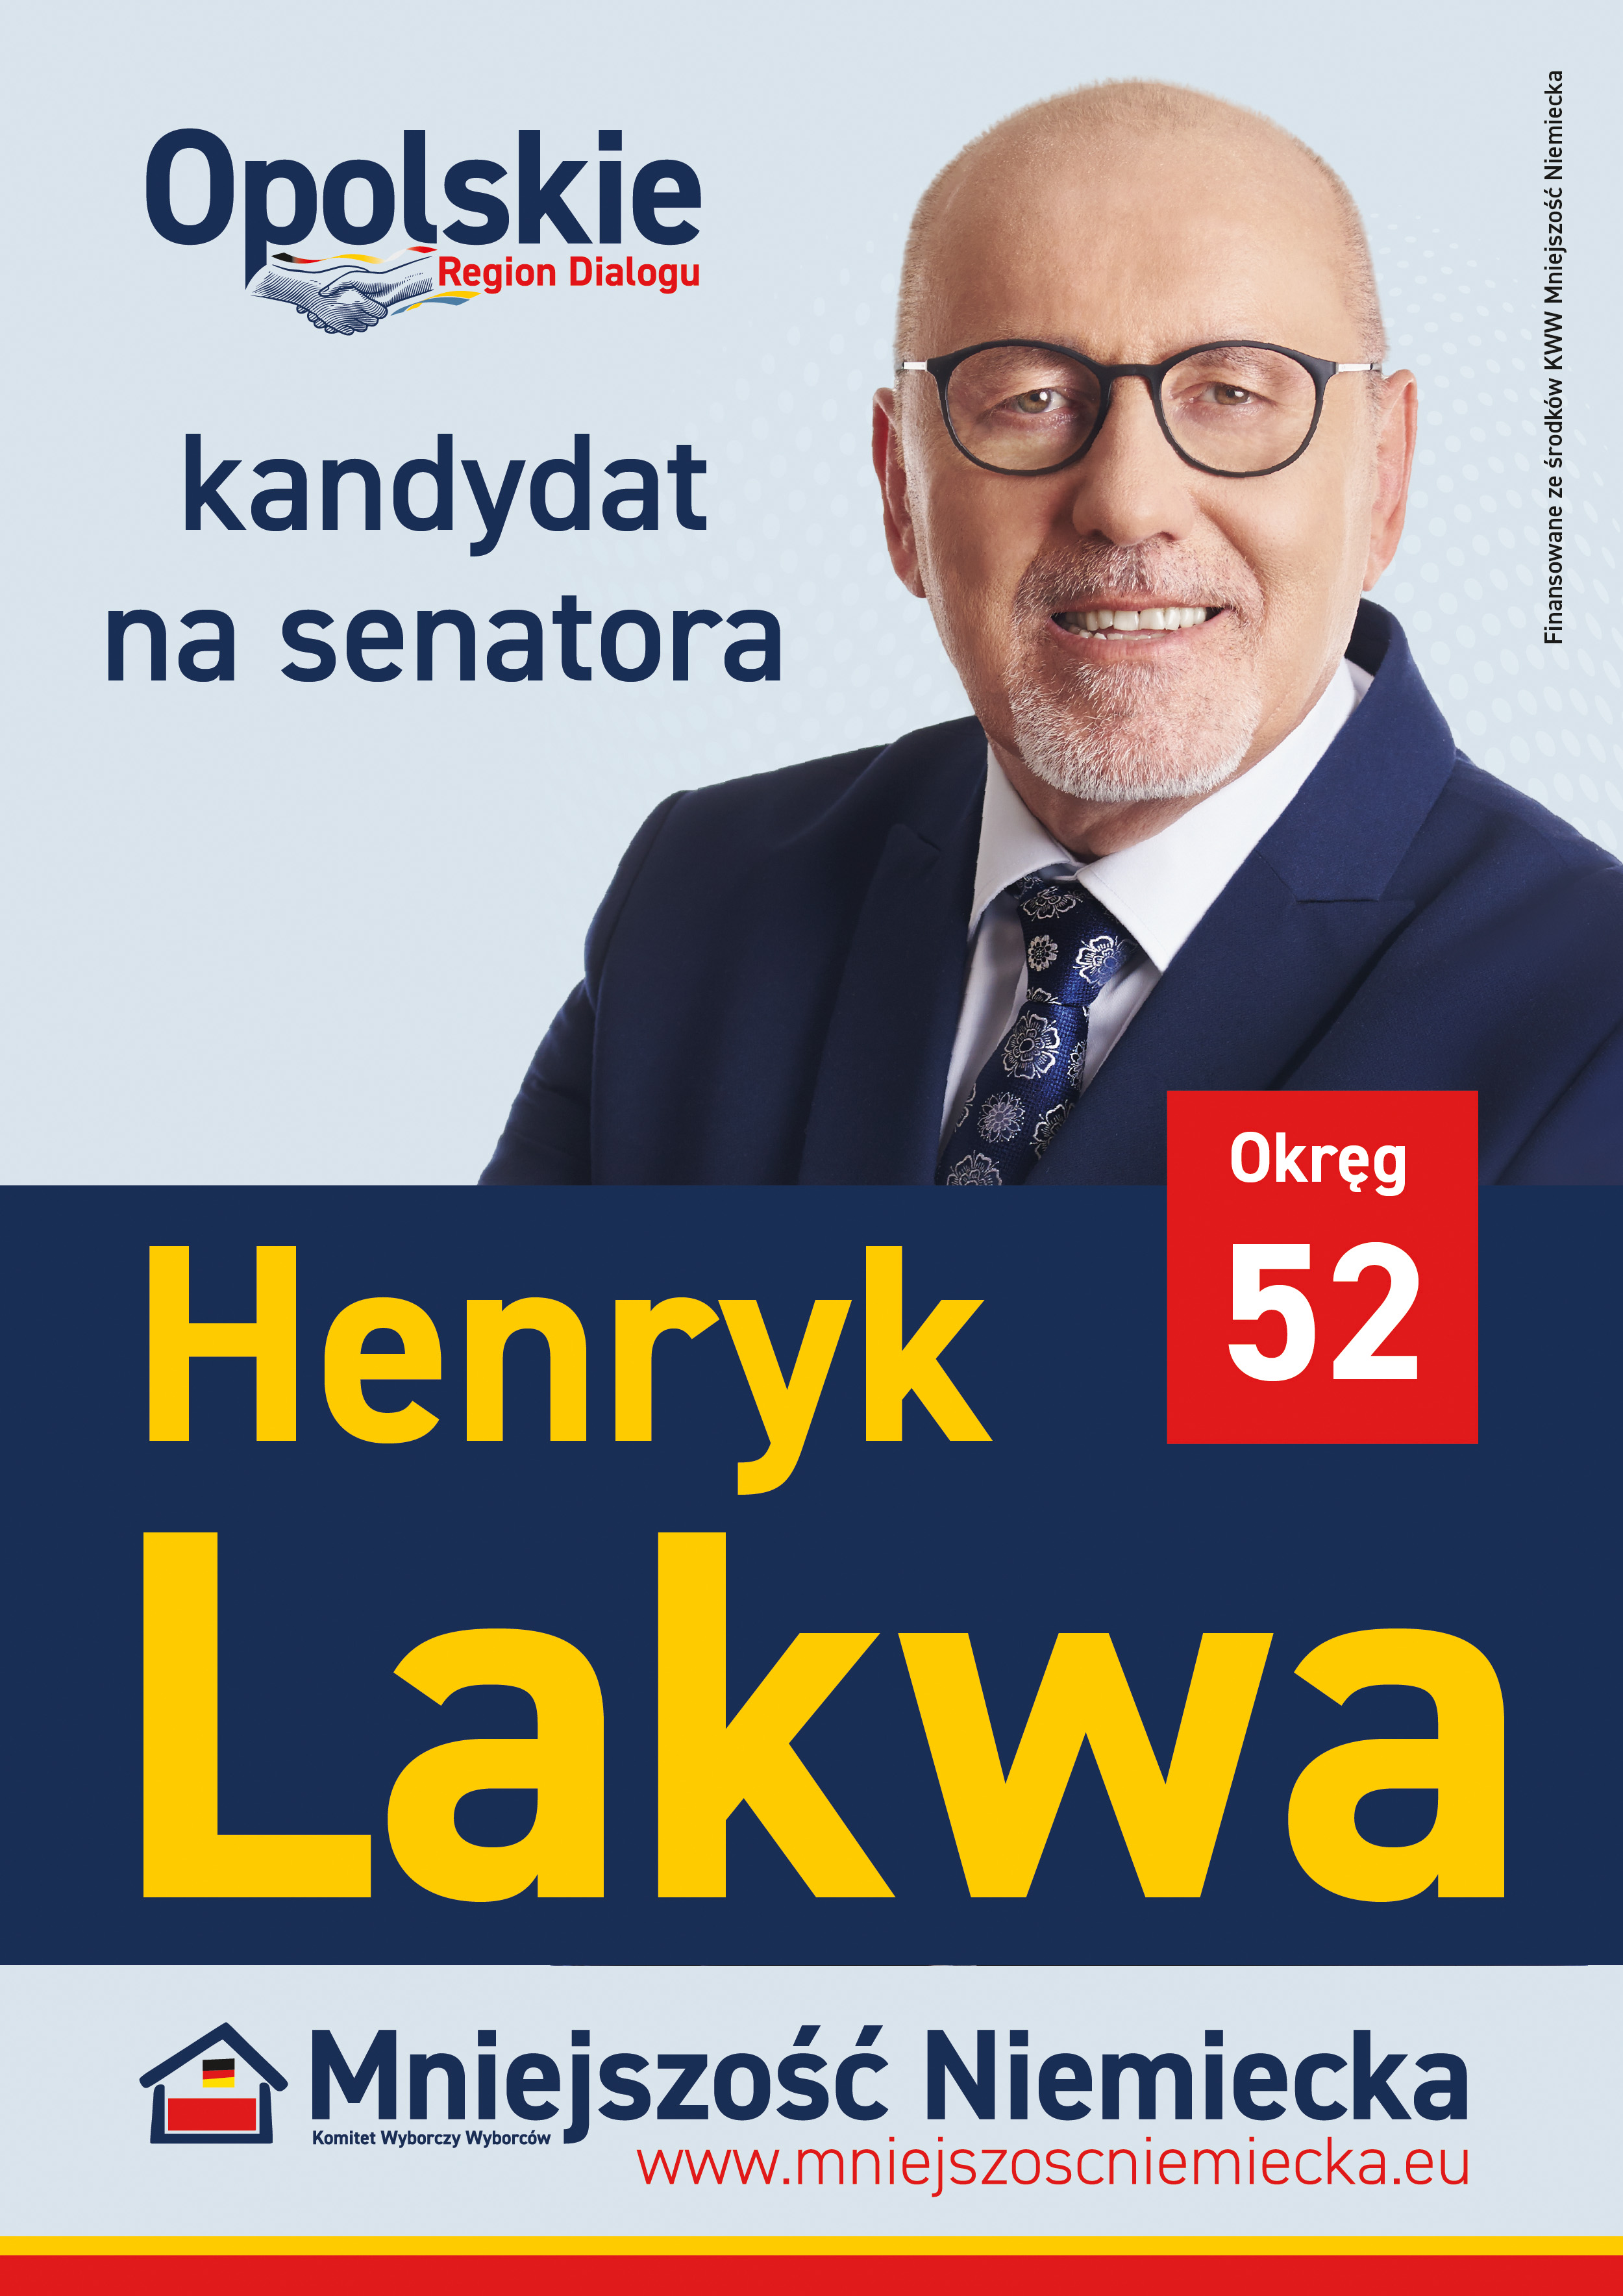 Henryk Lakwa kandydatem KWW Mniejszość Niemiecka do Senatu